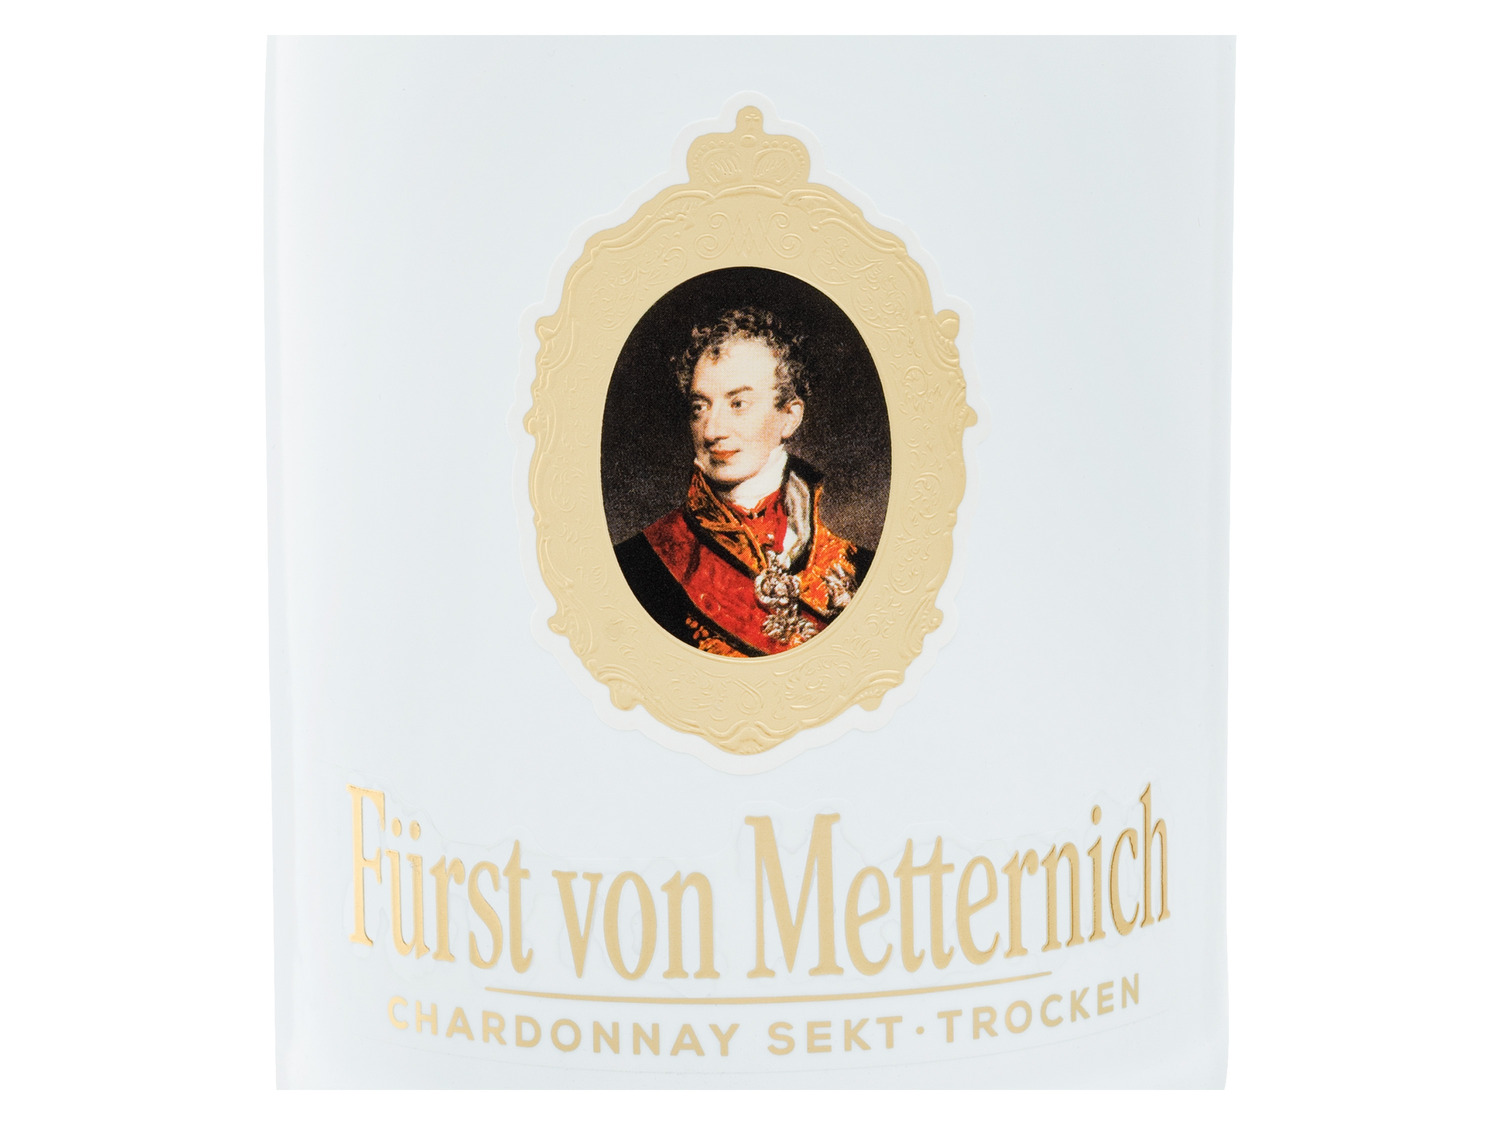 Fürst von Metternich trocken… Chardonnay Sekt Deutscher